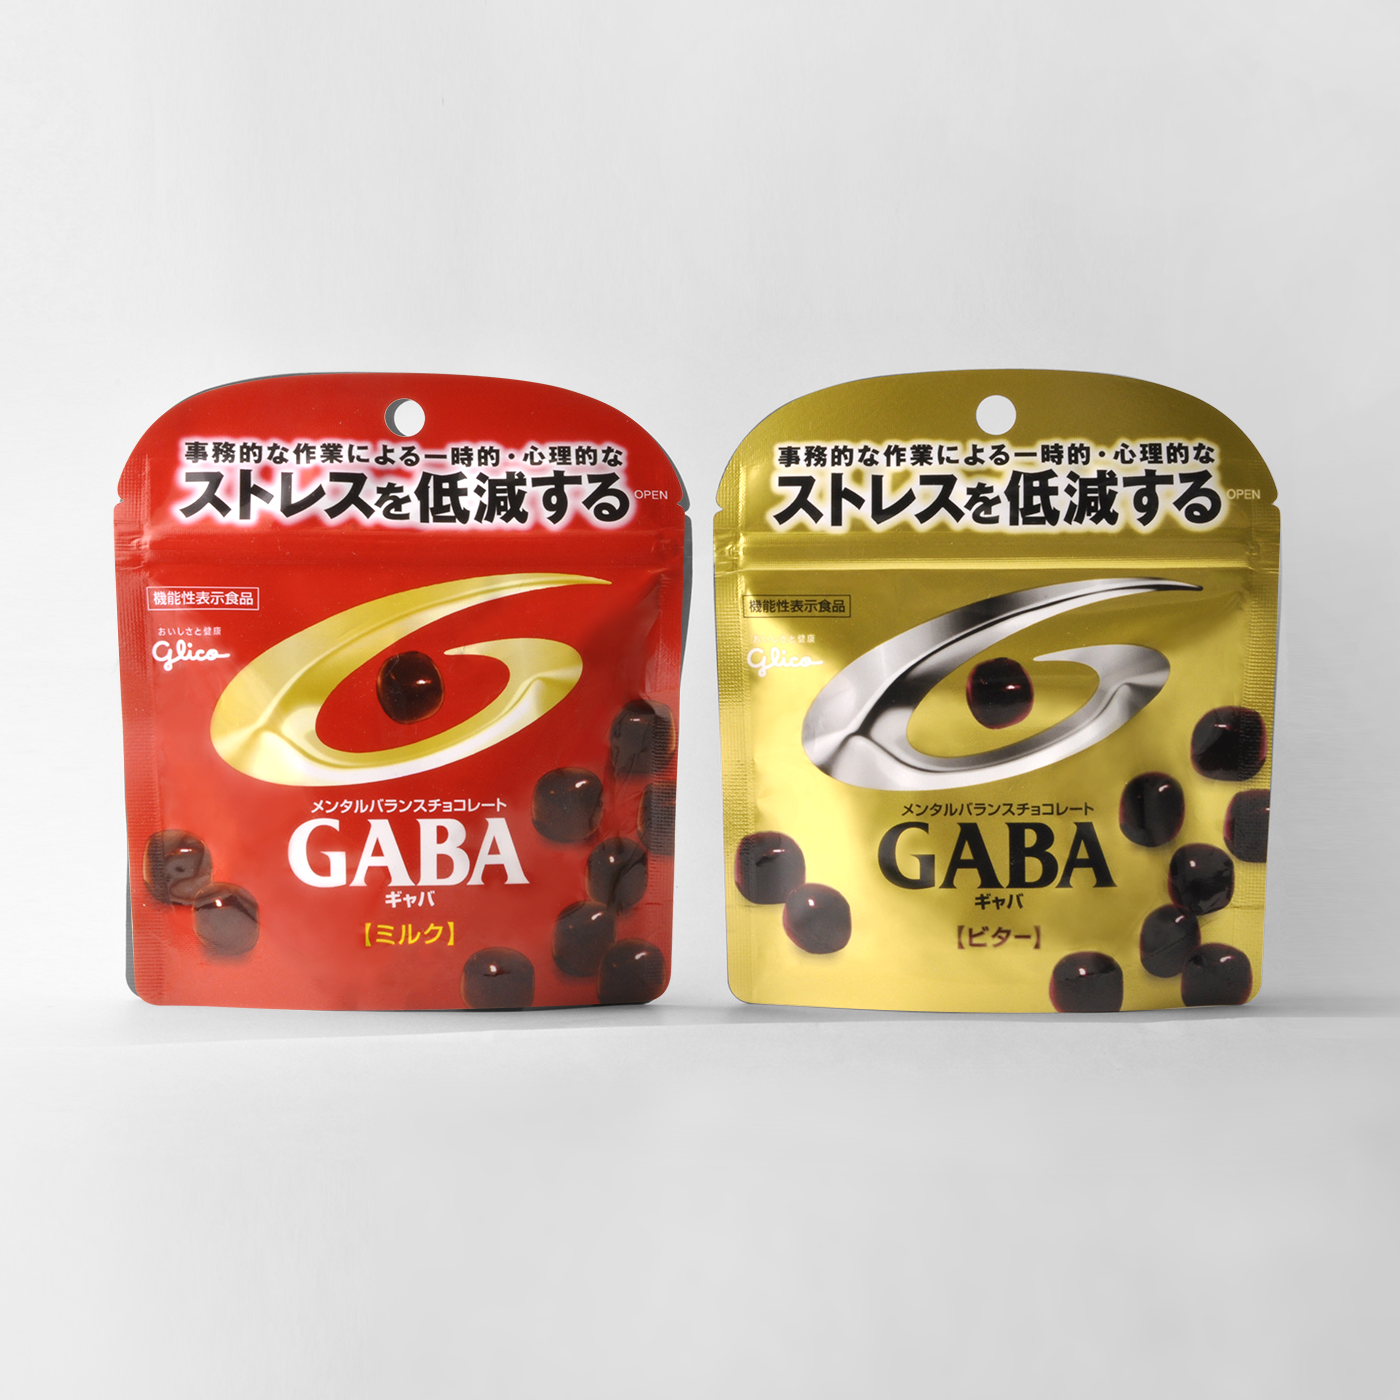 メンタルバランスチョコレート GABA (2020)